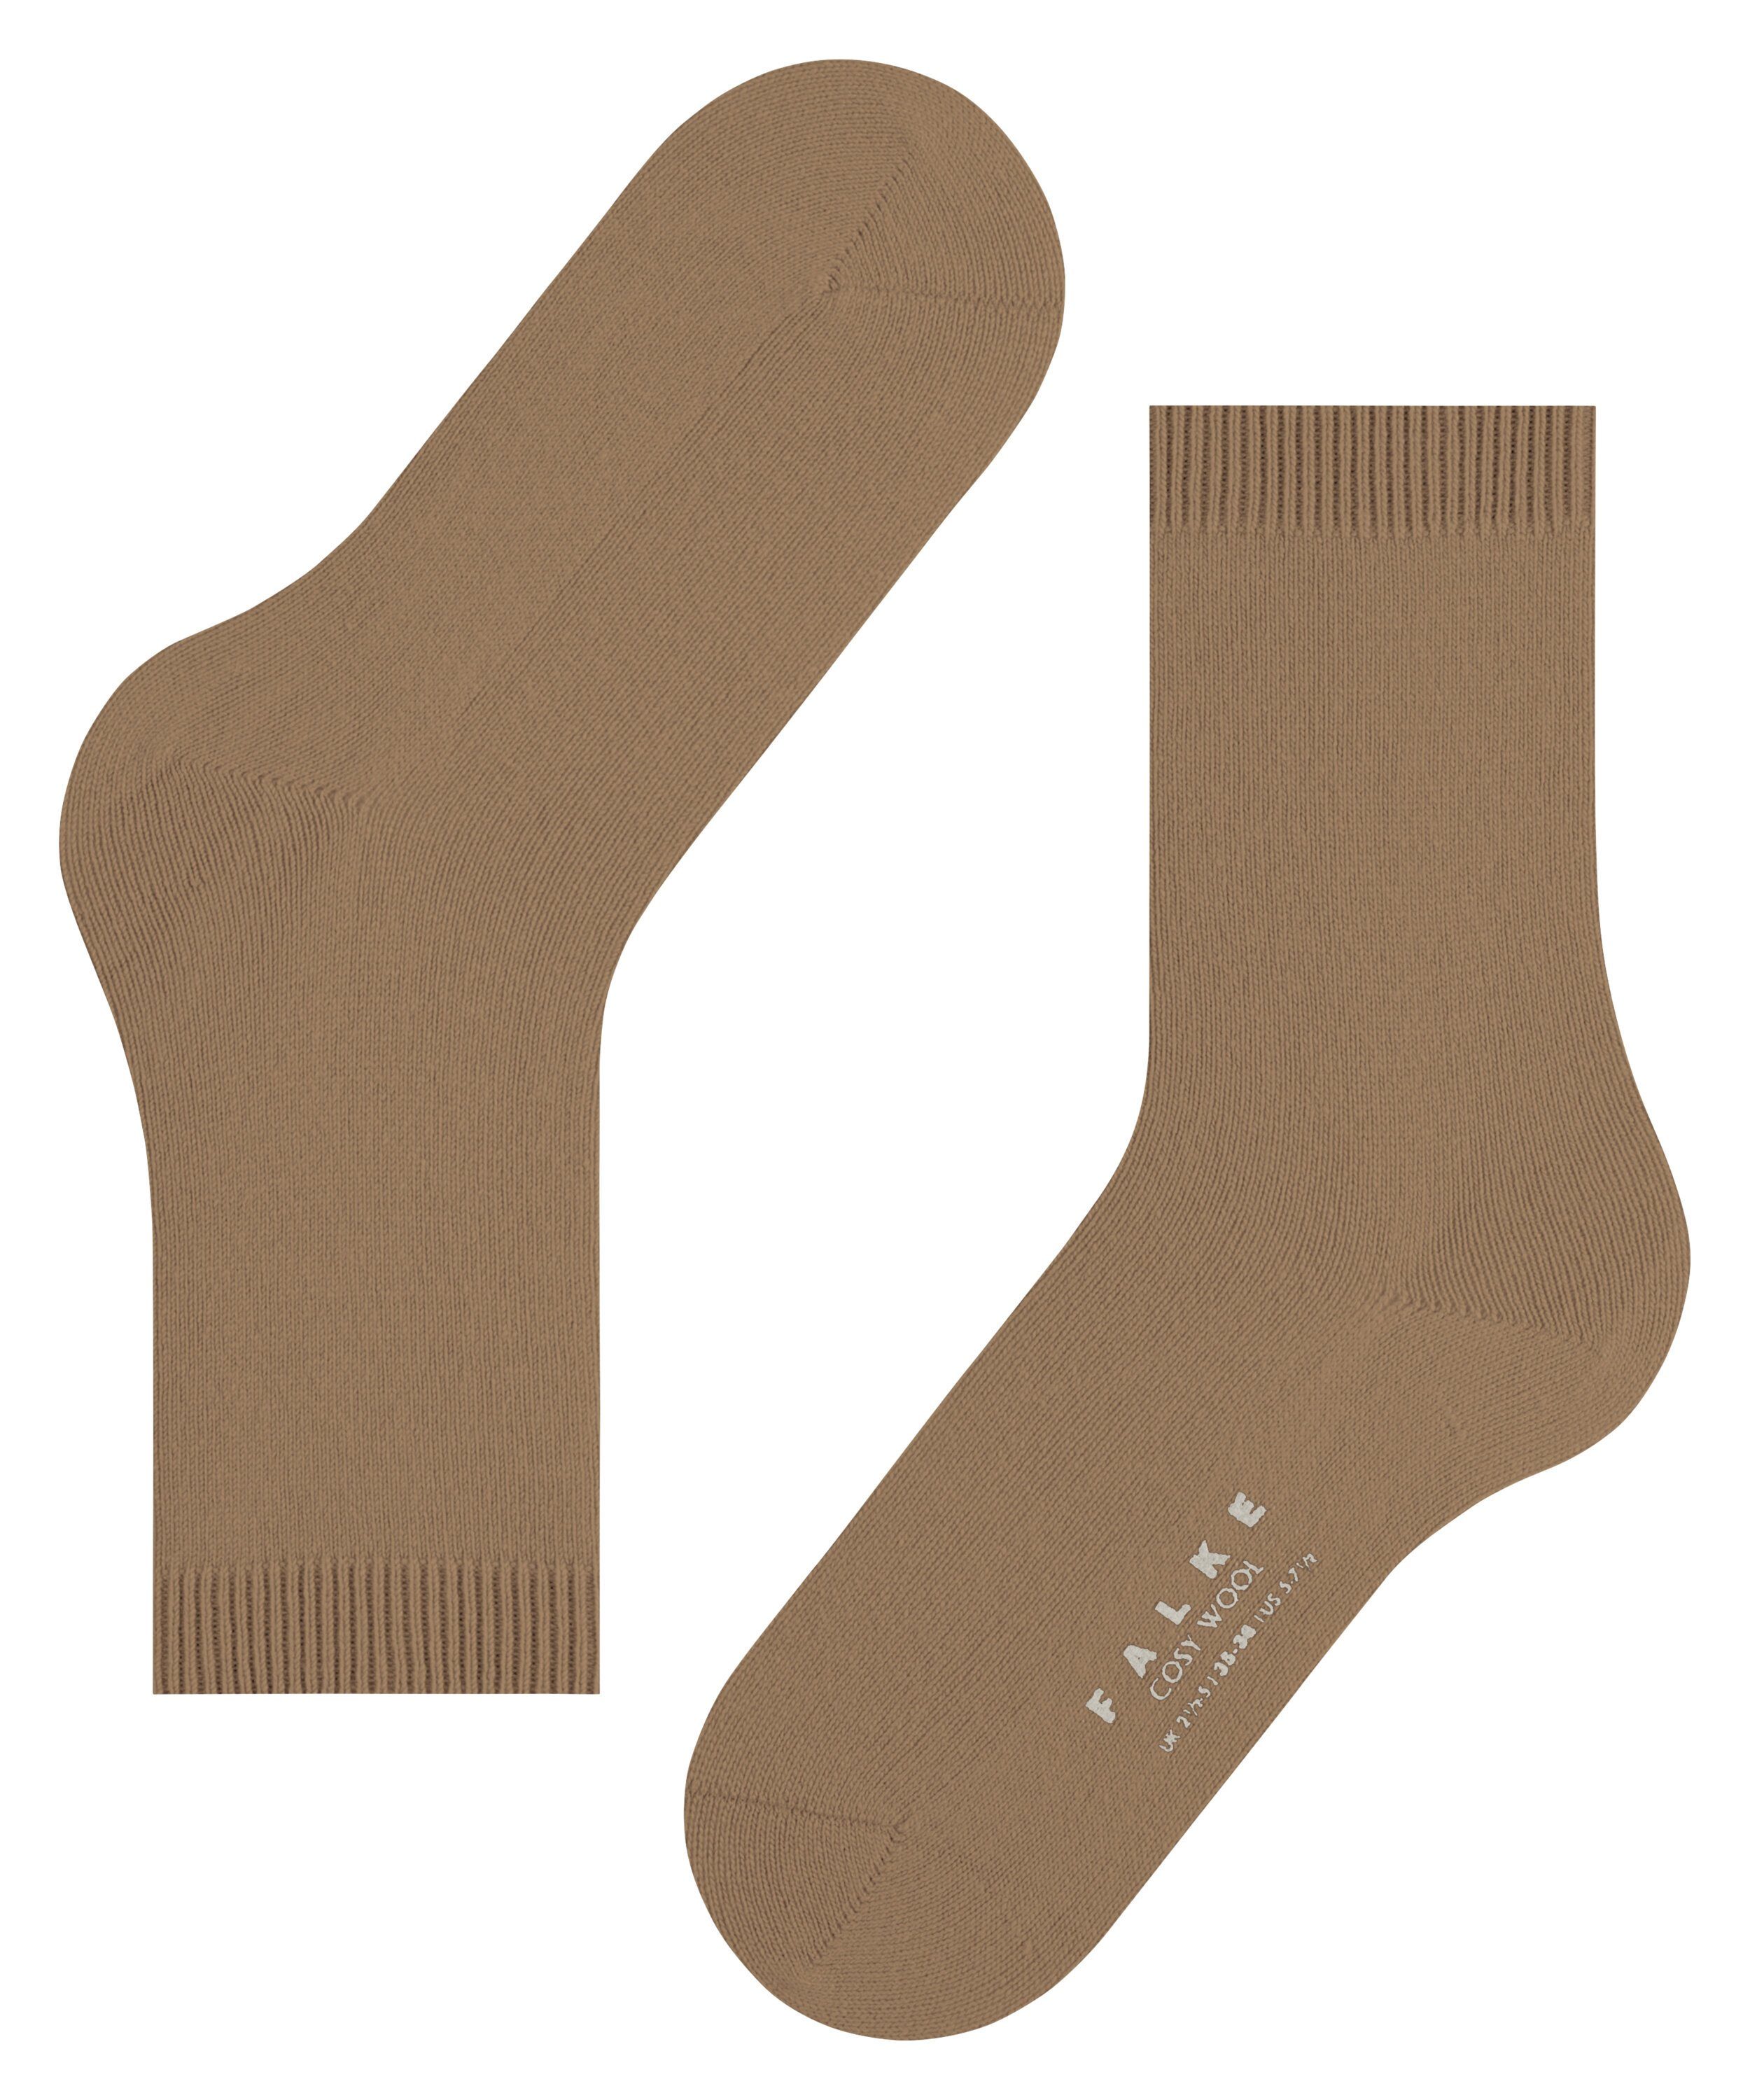 Socken Wool Cosy wholegrain (1-Paar) FALKE (5017)